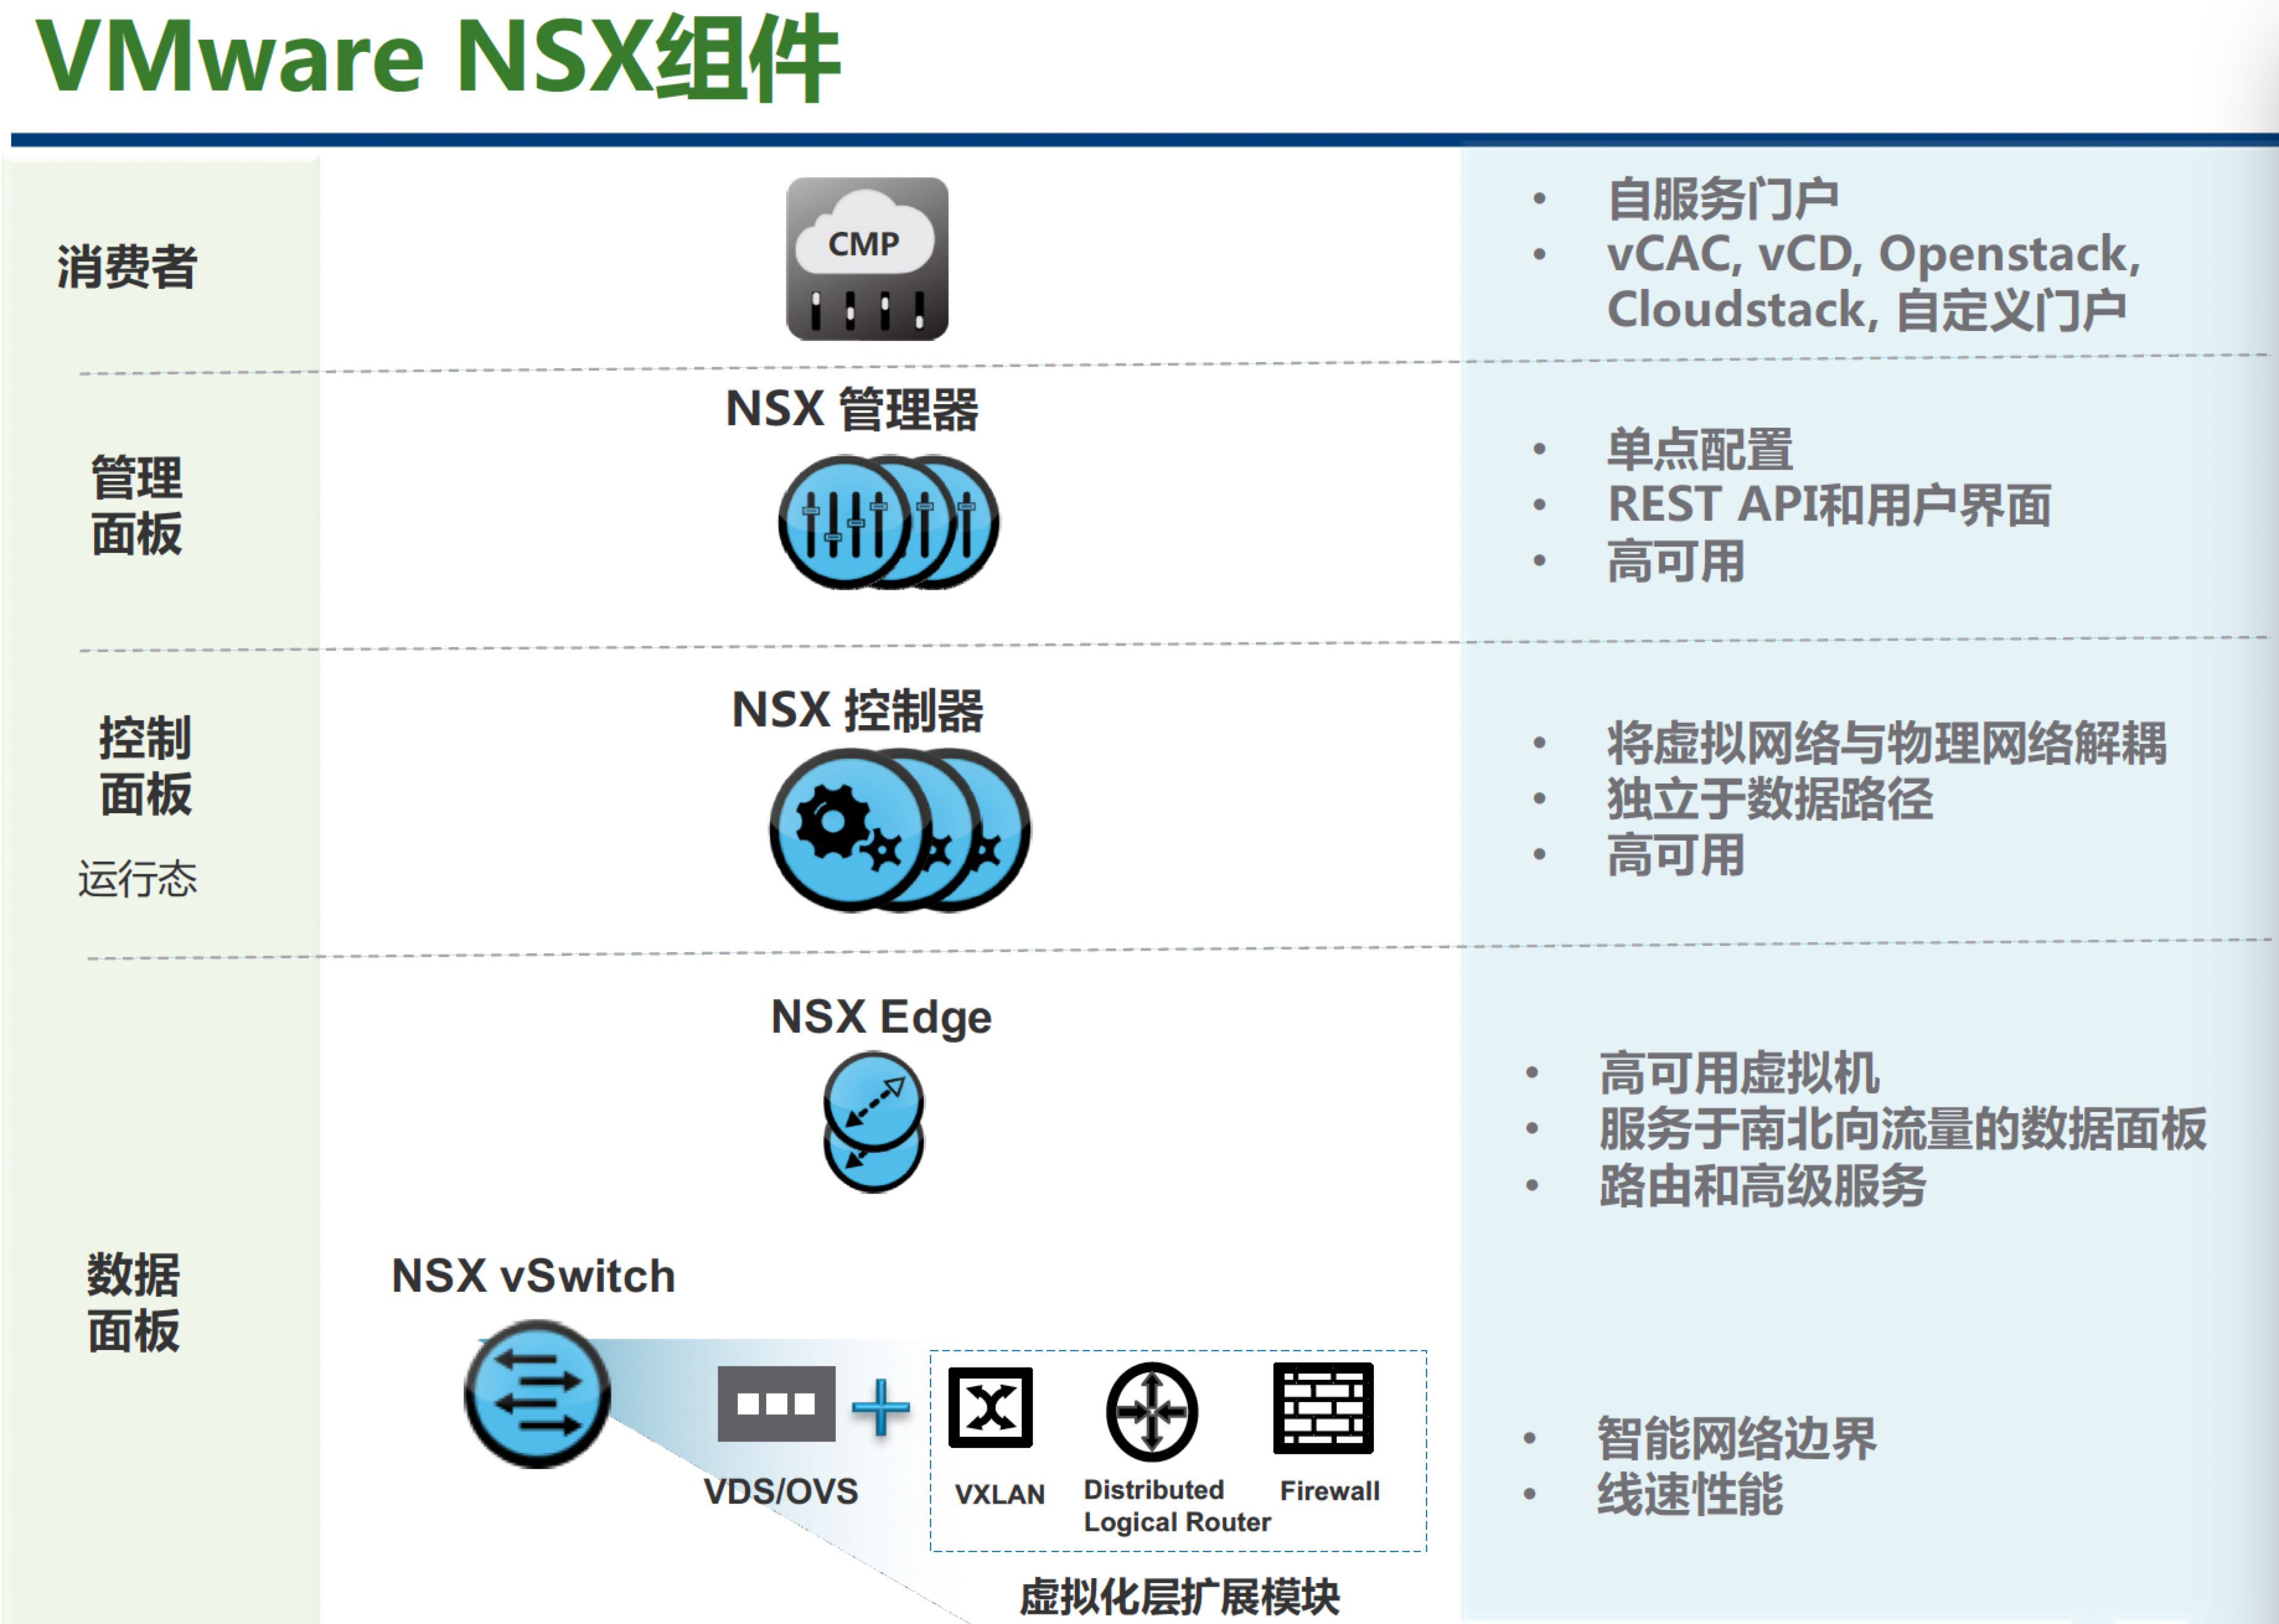 VMware NSX组件分解图